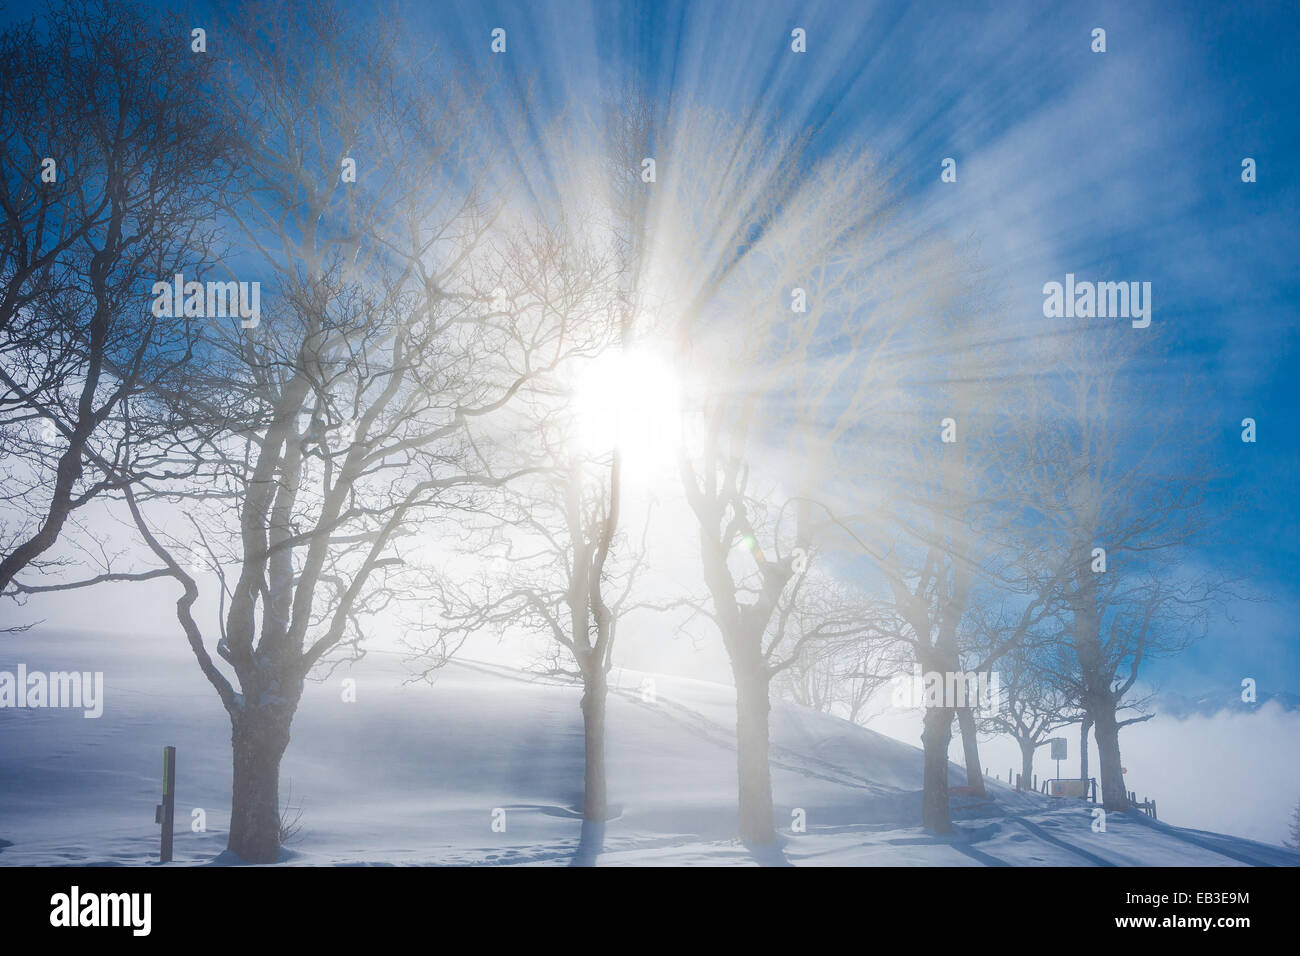 La Svizzera, Svitto, Arth, Rigi, vista invernale con alberi di neve e sole Foto Stock